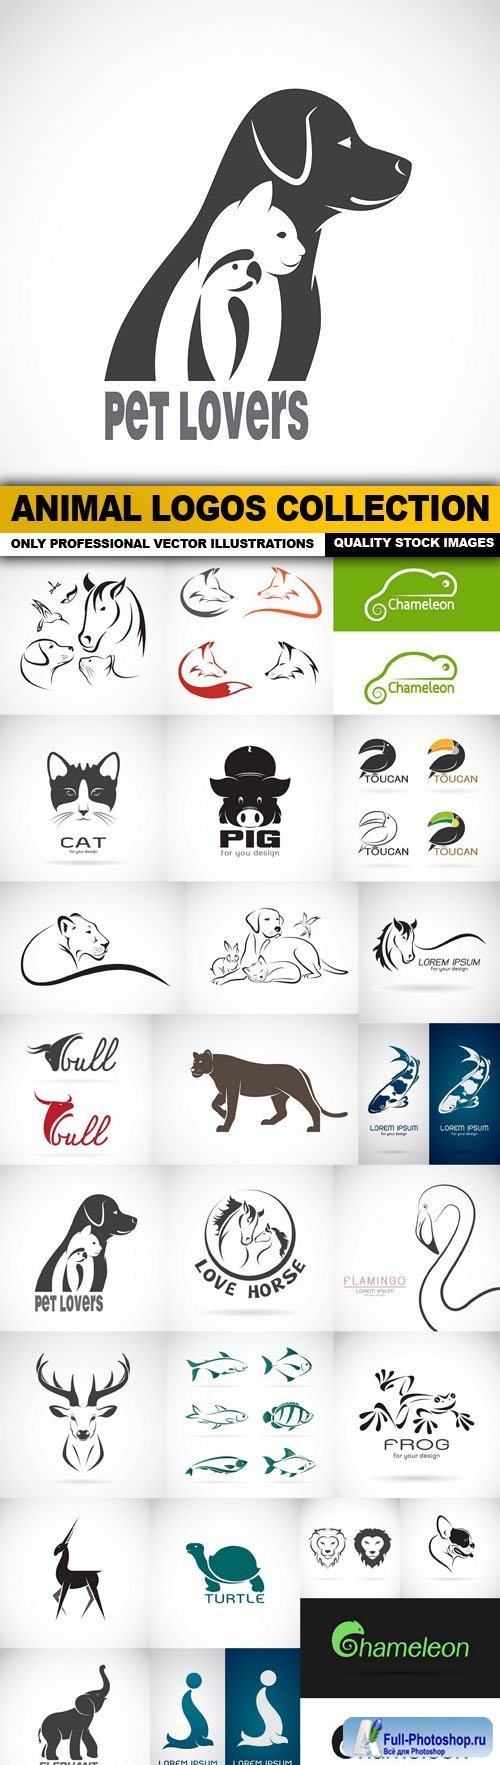 Animal Logos Collection - 25 Vector